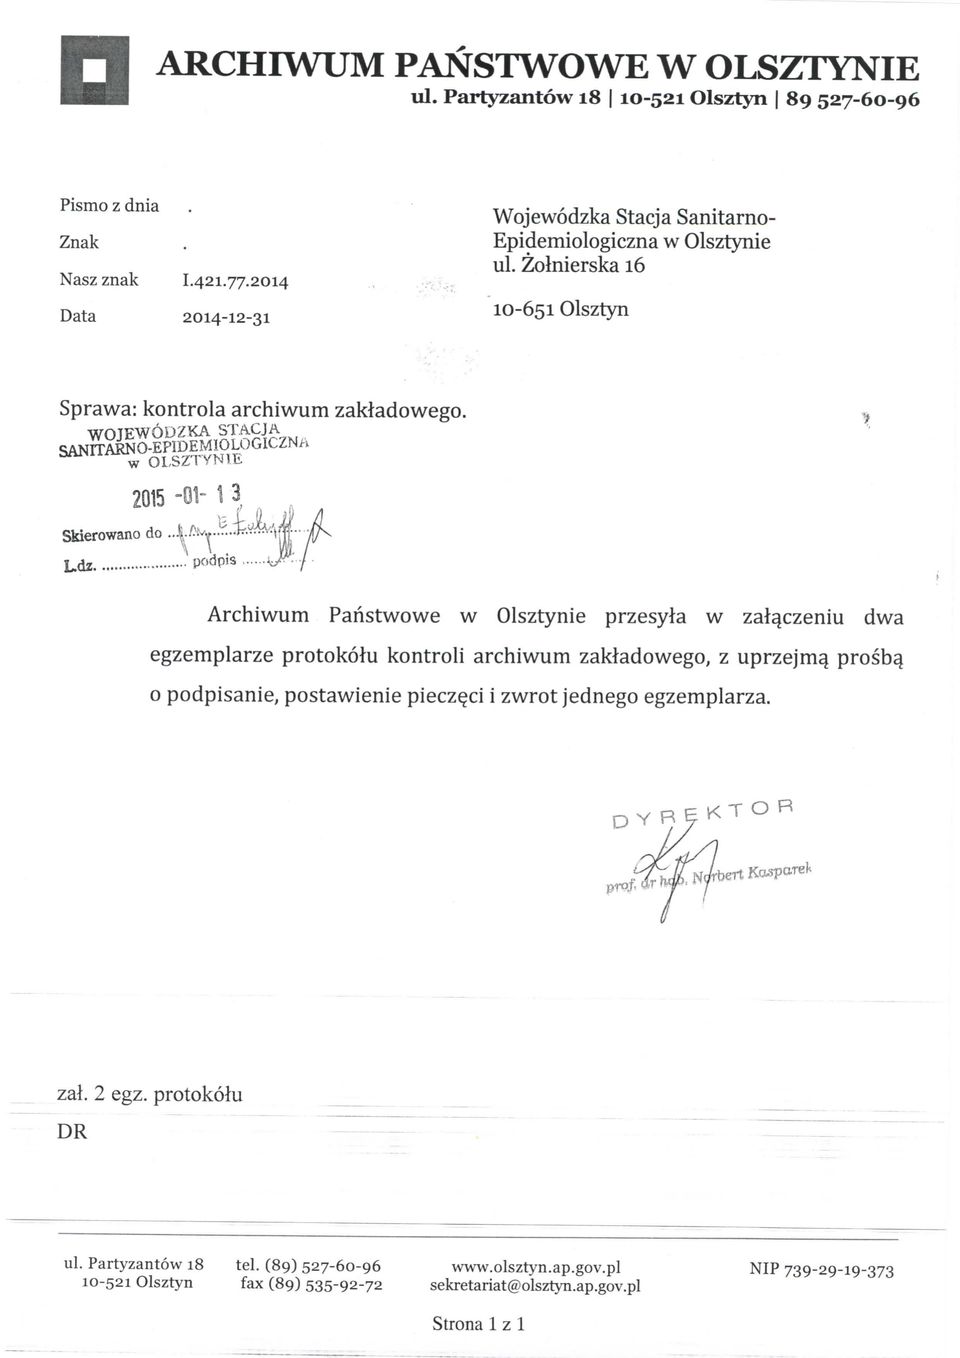 STACJA Skierowano do wolsztynle 2015-01- 1 3 Archiwum Paristwowe w Olsztynie przesyla w zalaczeniu dwa egzemplarze protokolu kontroli archiwum zakladowego, z uprzejm^